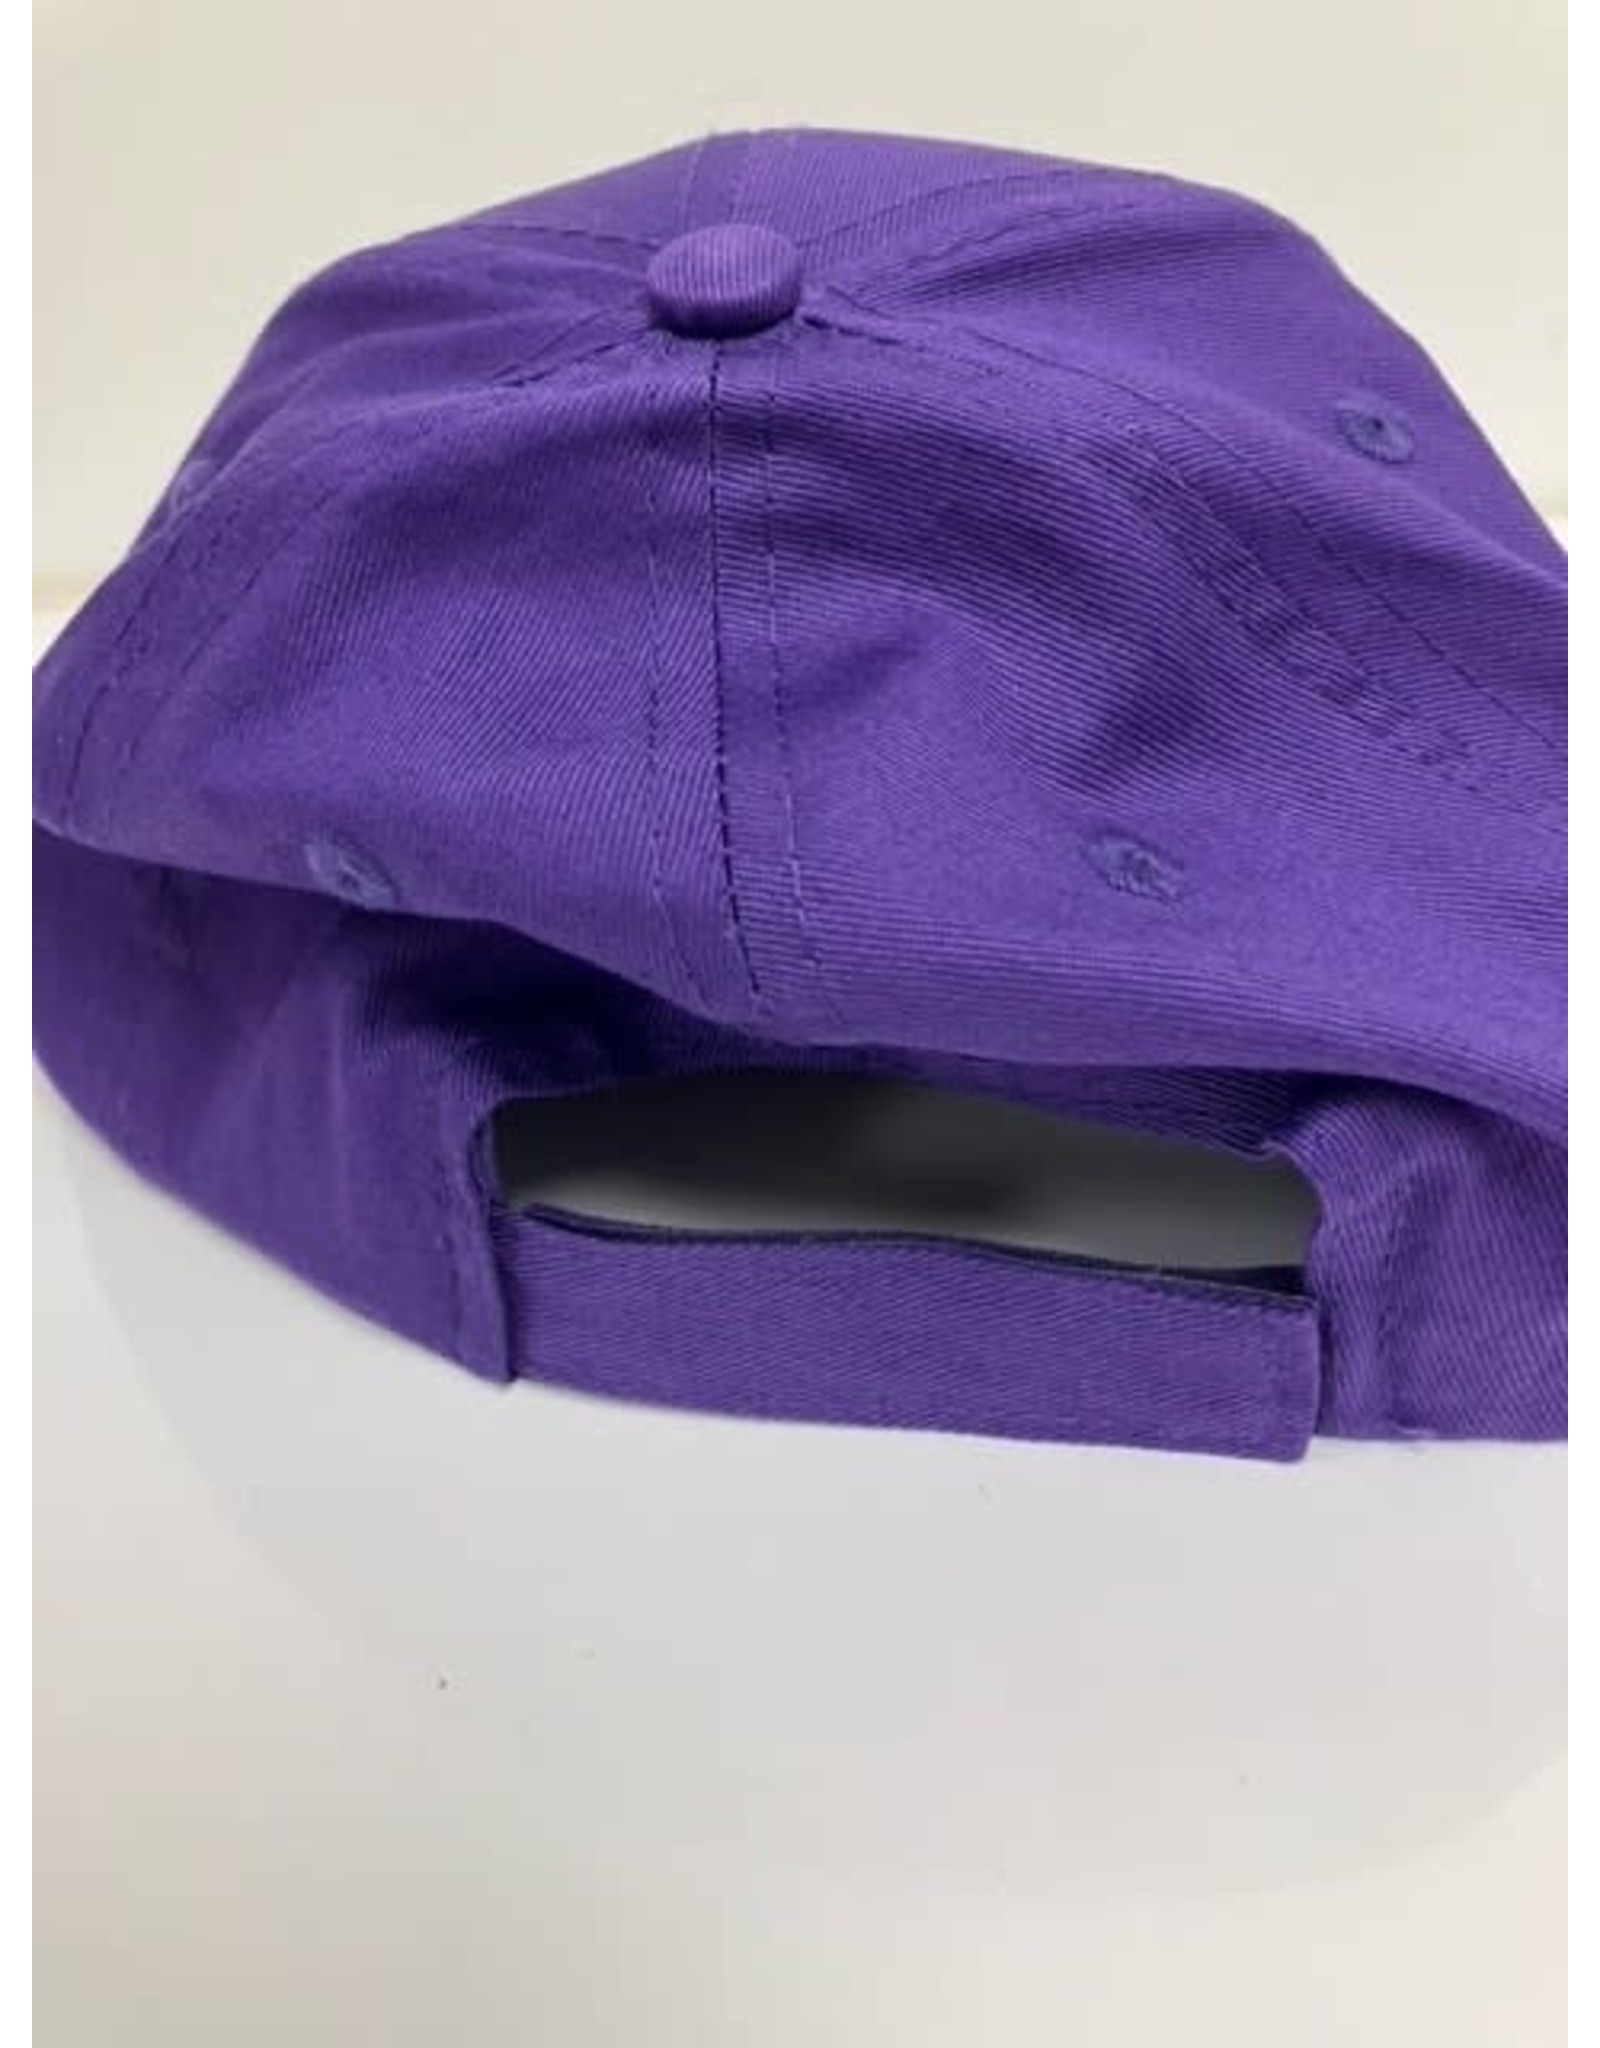 Port & Co. ASH purple twill cap